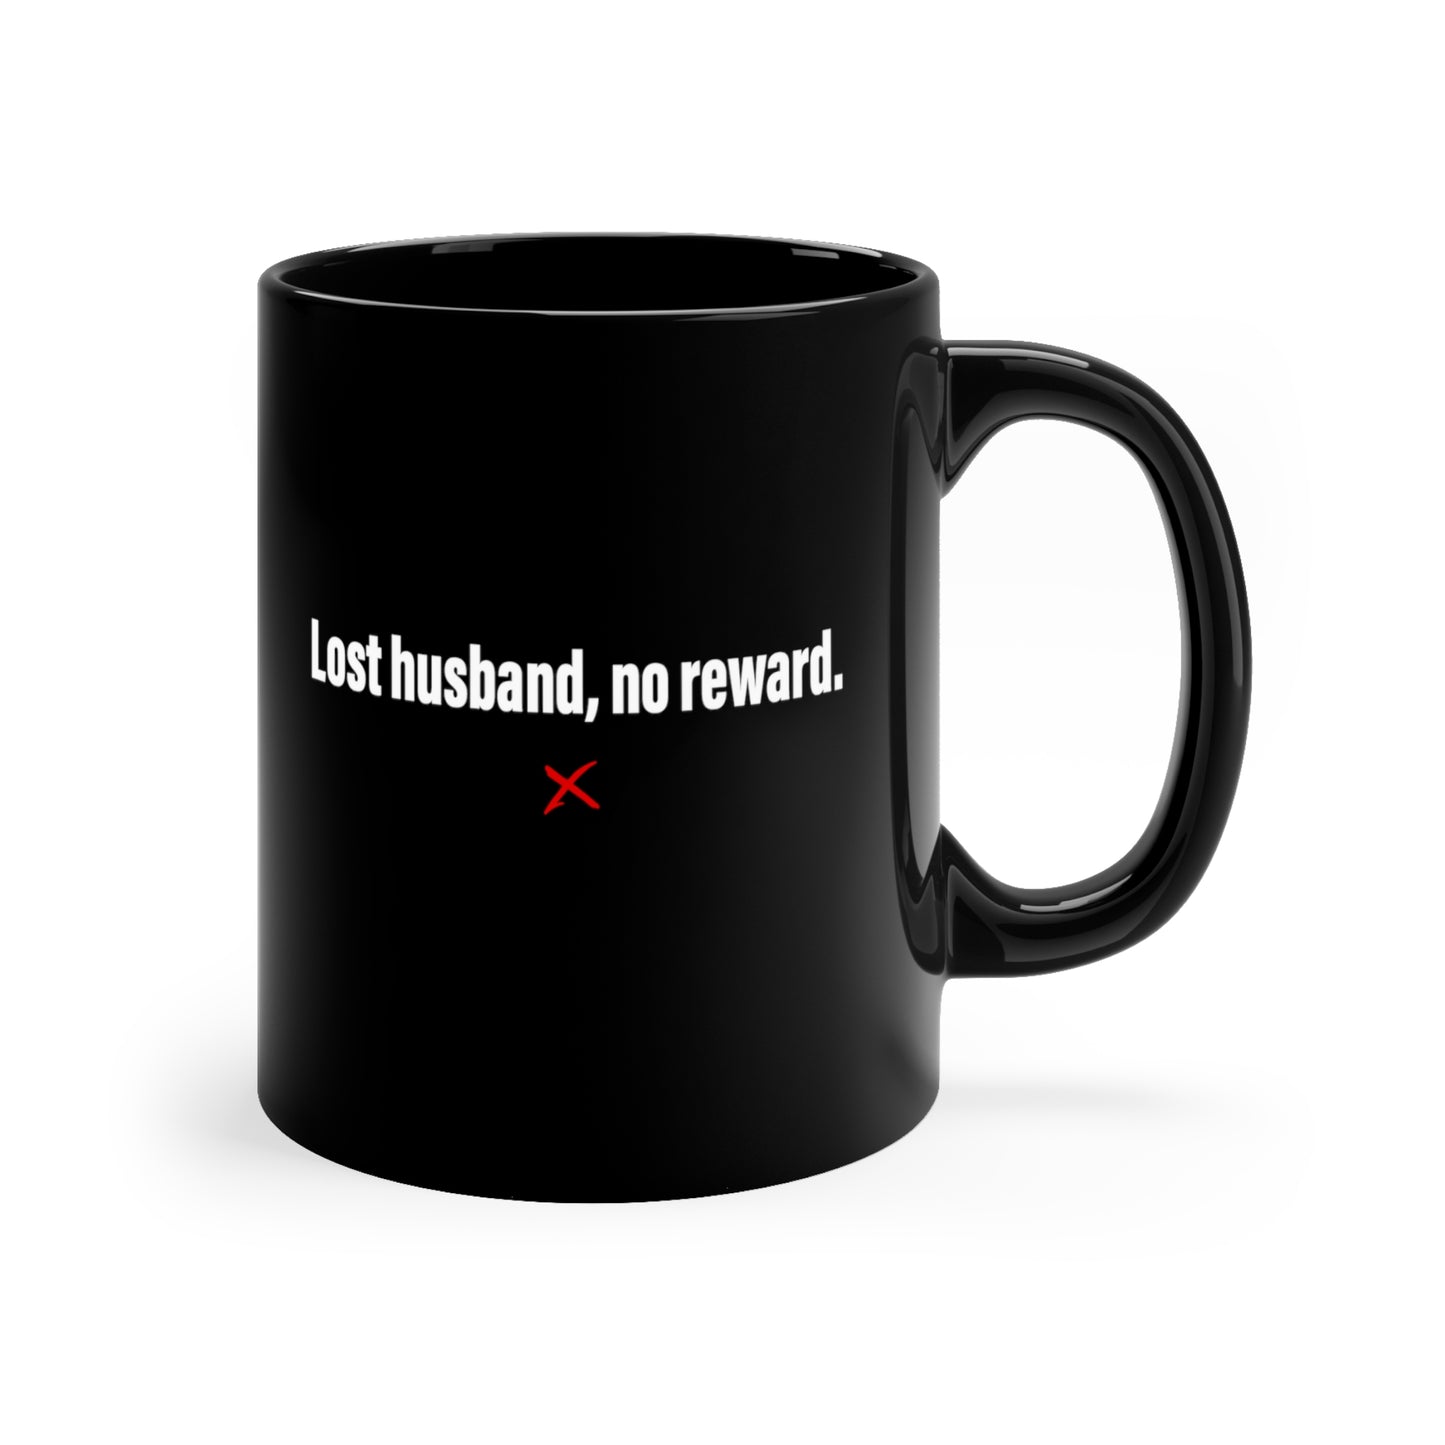 Lost husband, no reward. - Mug